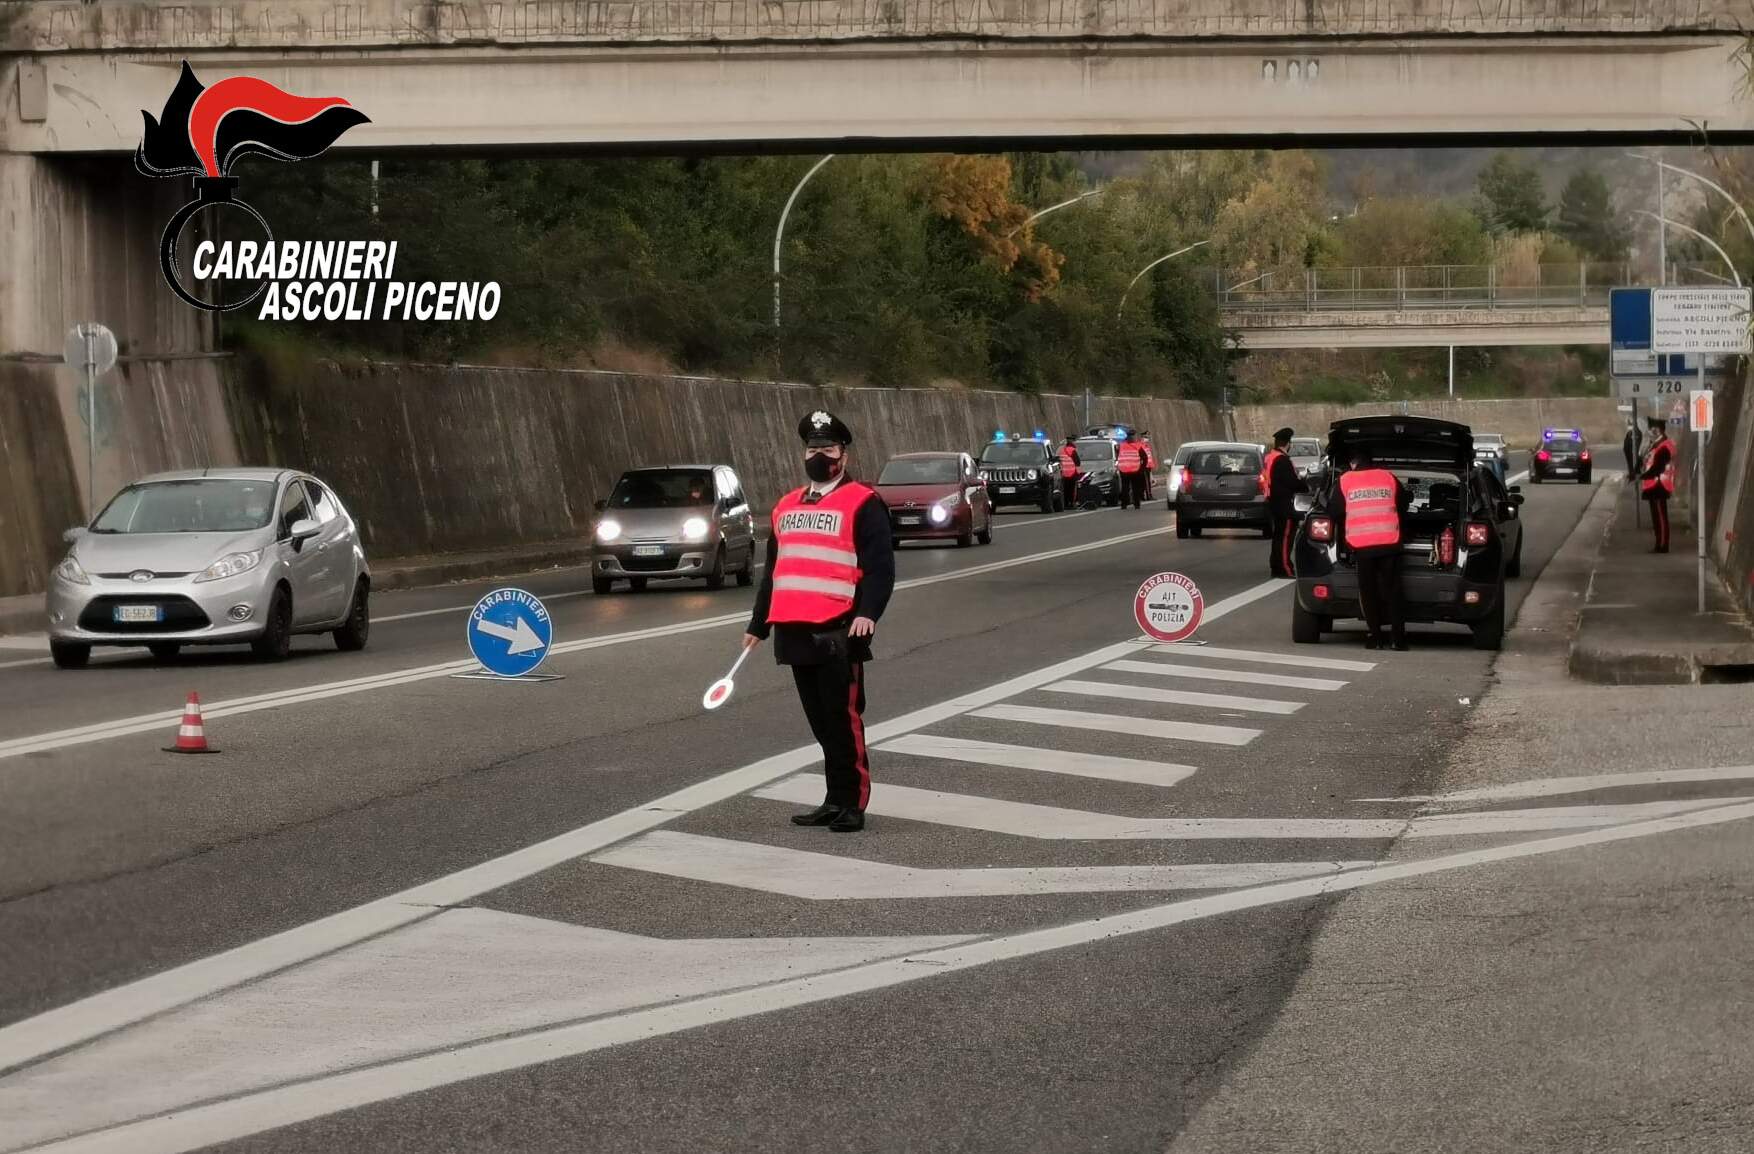 Guida pericolosa con smartphone, Carabinieri: “tolleranza zero”